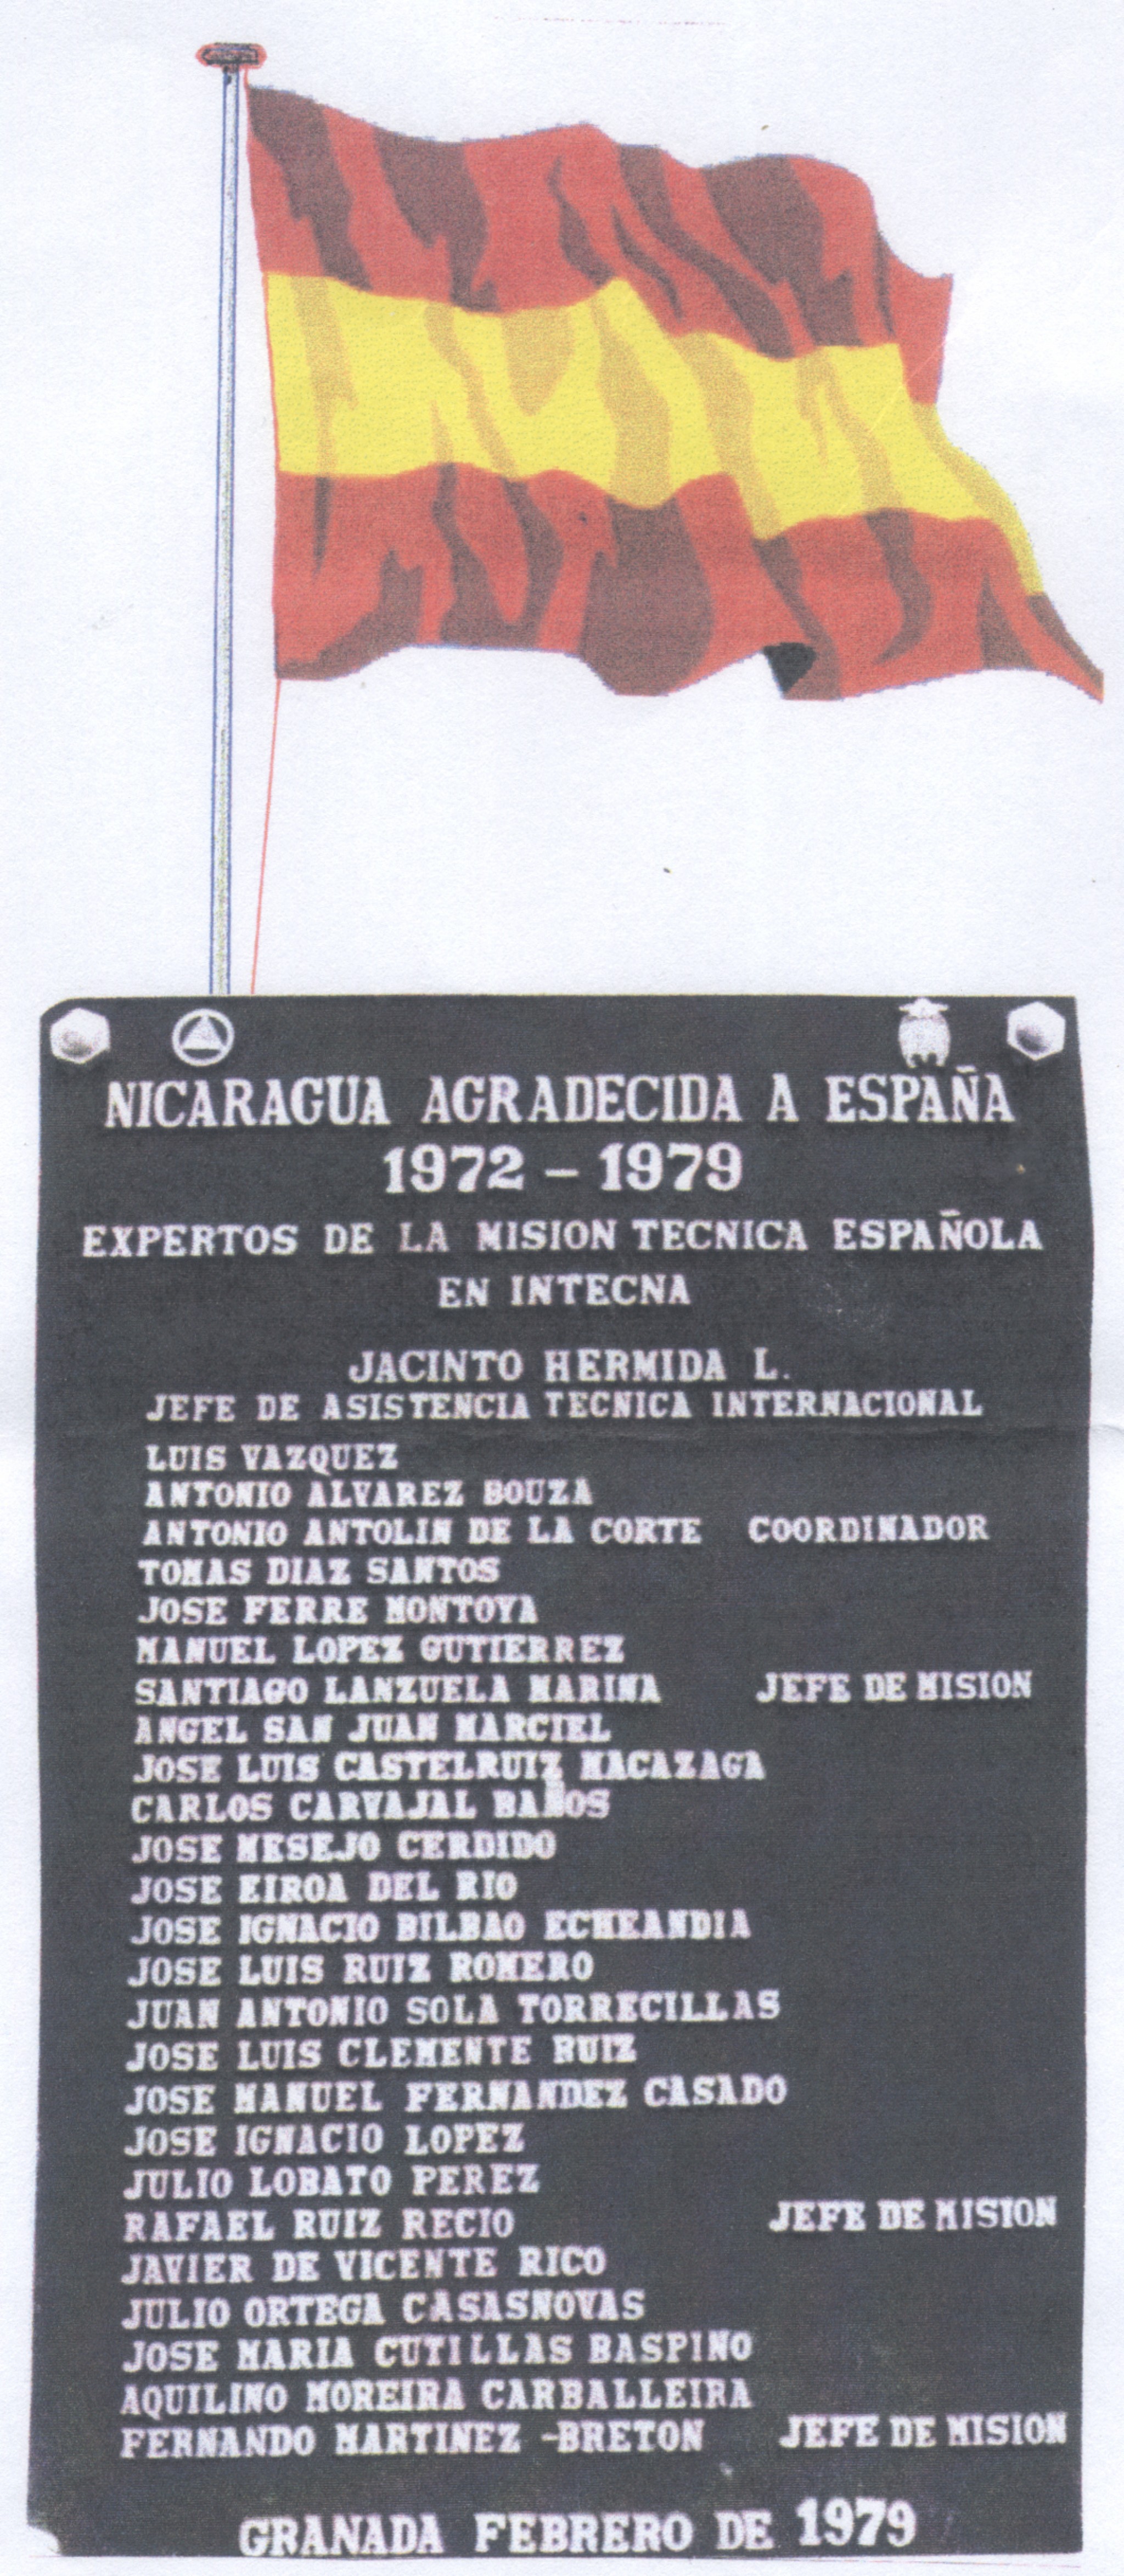 Imagen 1. Instituto Tecnológico Nacional (intecna) en las afueras de la antigua ciudad de Granada, en Nicaragua